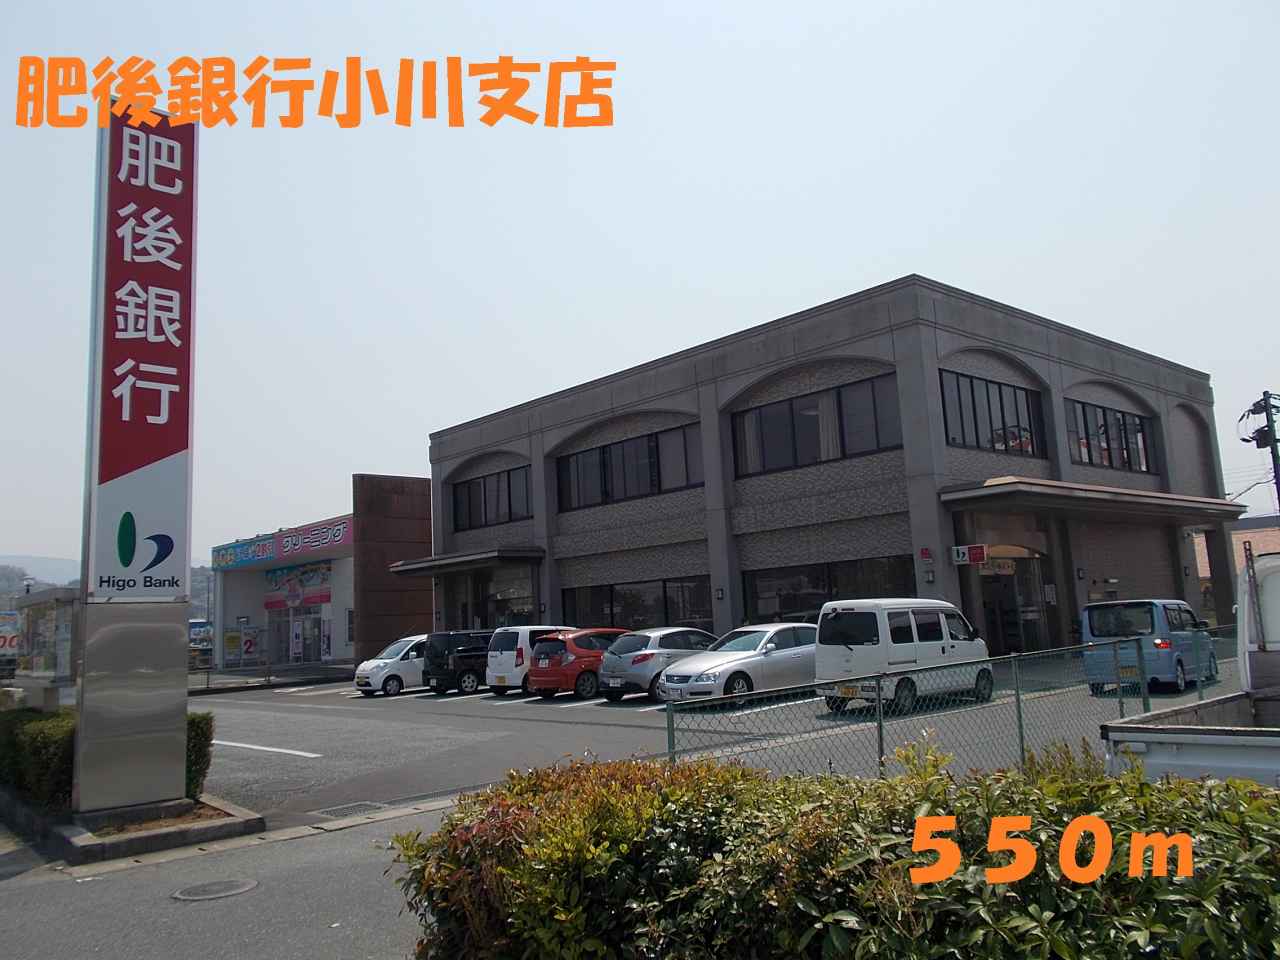 Bank. 550m to Higo Bank Ogawa Branch (Bank)